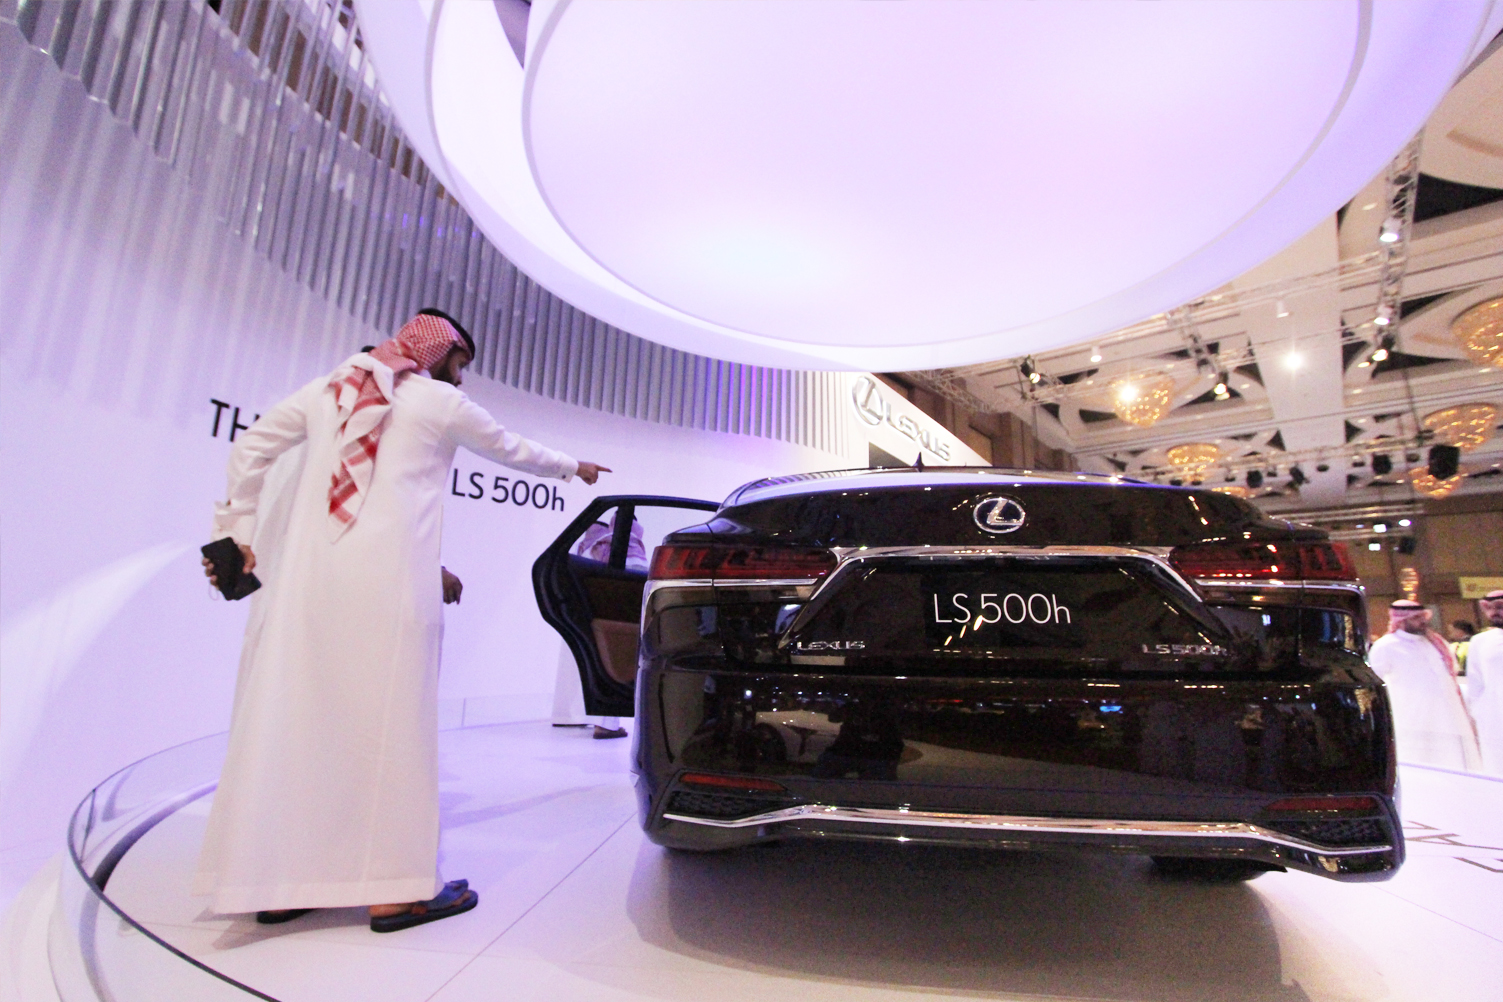 لكزس LS 500 تبهر عشاق الفخامة في معرض السيارات الفاخرة في الرياض 51